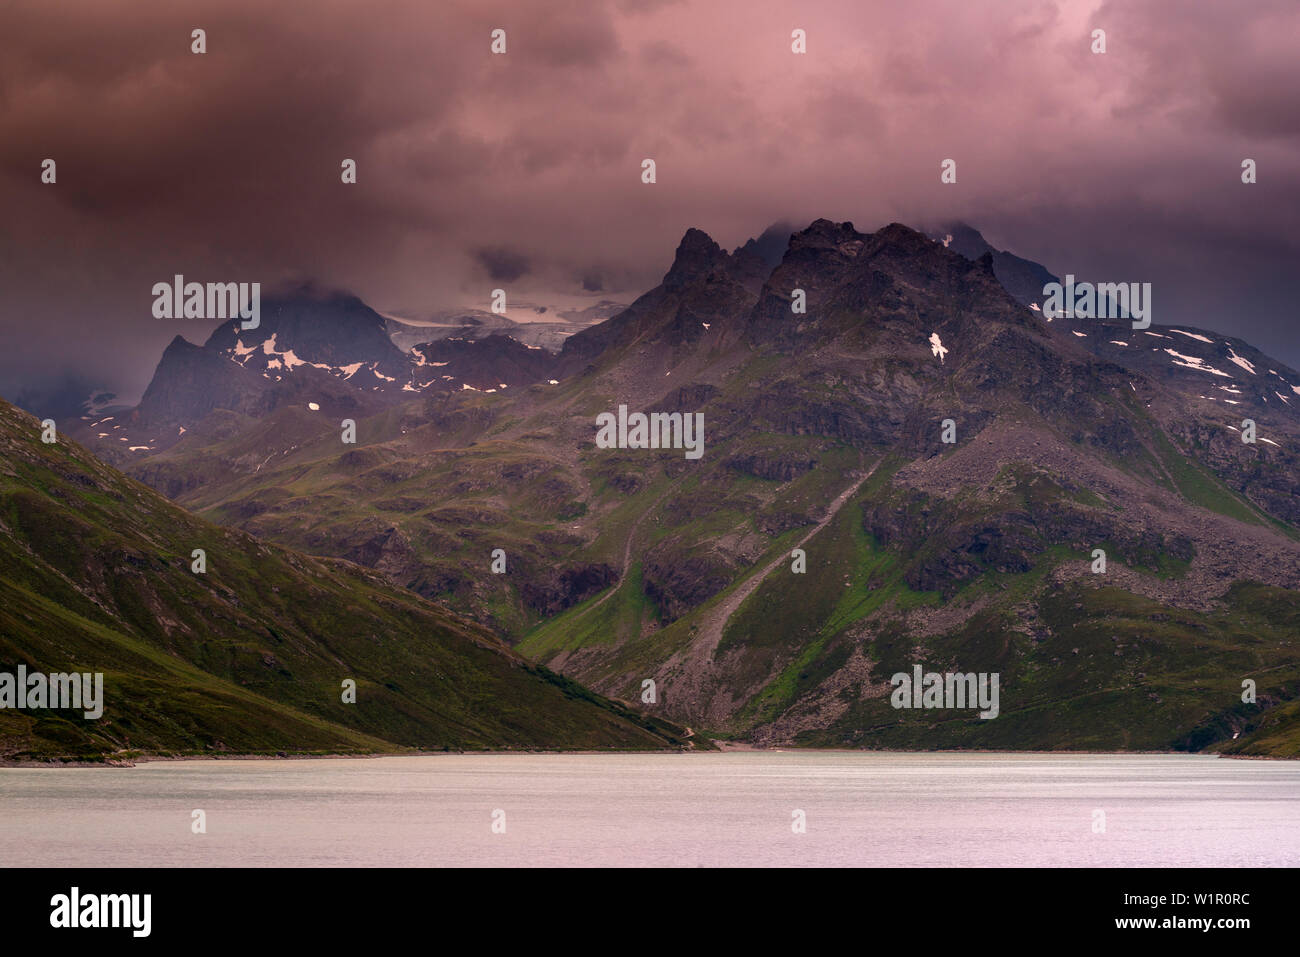 Lake Silvrettasee, storm cloud, Mt. Schattenspitze, Glacier Schattenspitzgletscher, Bludenz, Vorarlberg, Austria, Europe Stock Photo